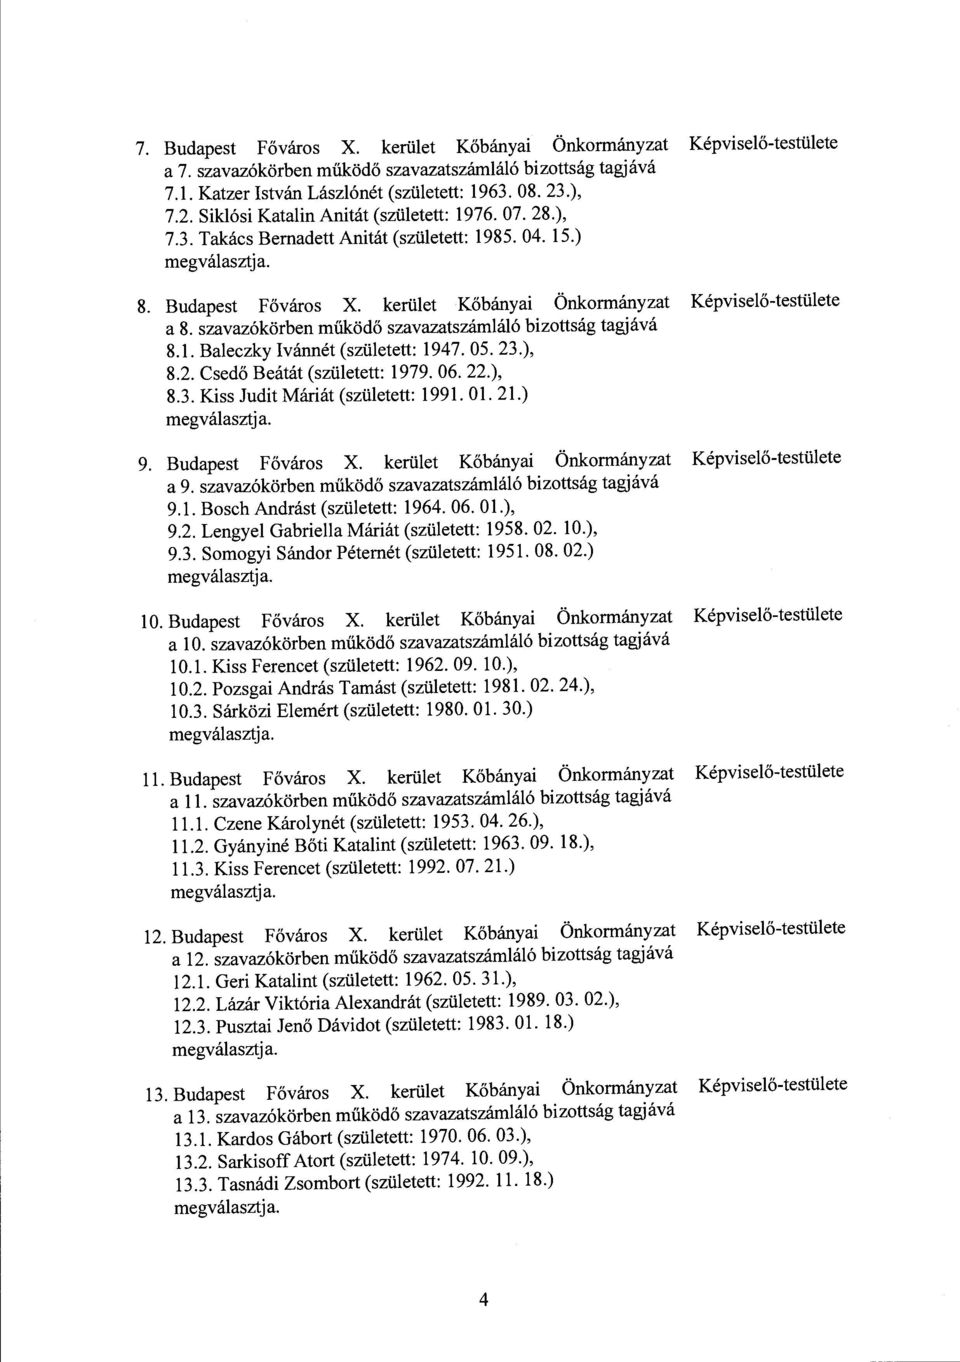 szavazókörben működő szavazatszámláló bizottság tagjává 8.1. Baleczky Ivánnét (született: 1947. 05. 23.), 8.2. Csedő Beátát (született: 1979. 06. 22.), 8.3. Kiss Judit Máriát (született: 1991. Ol. 21.